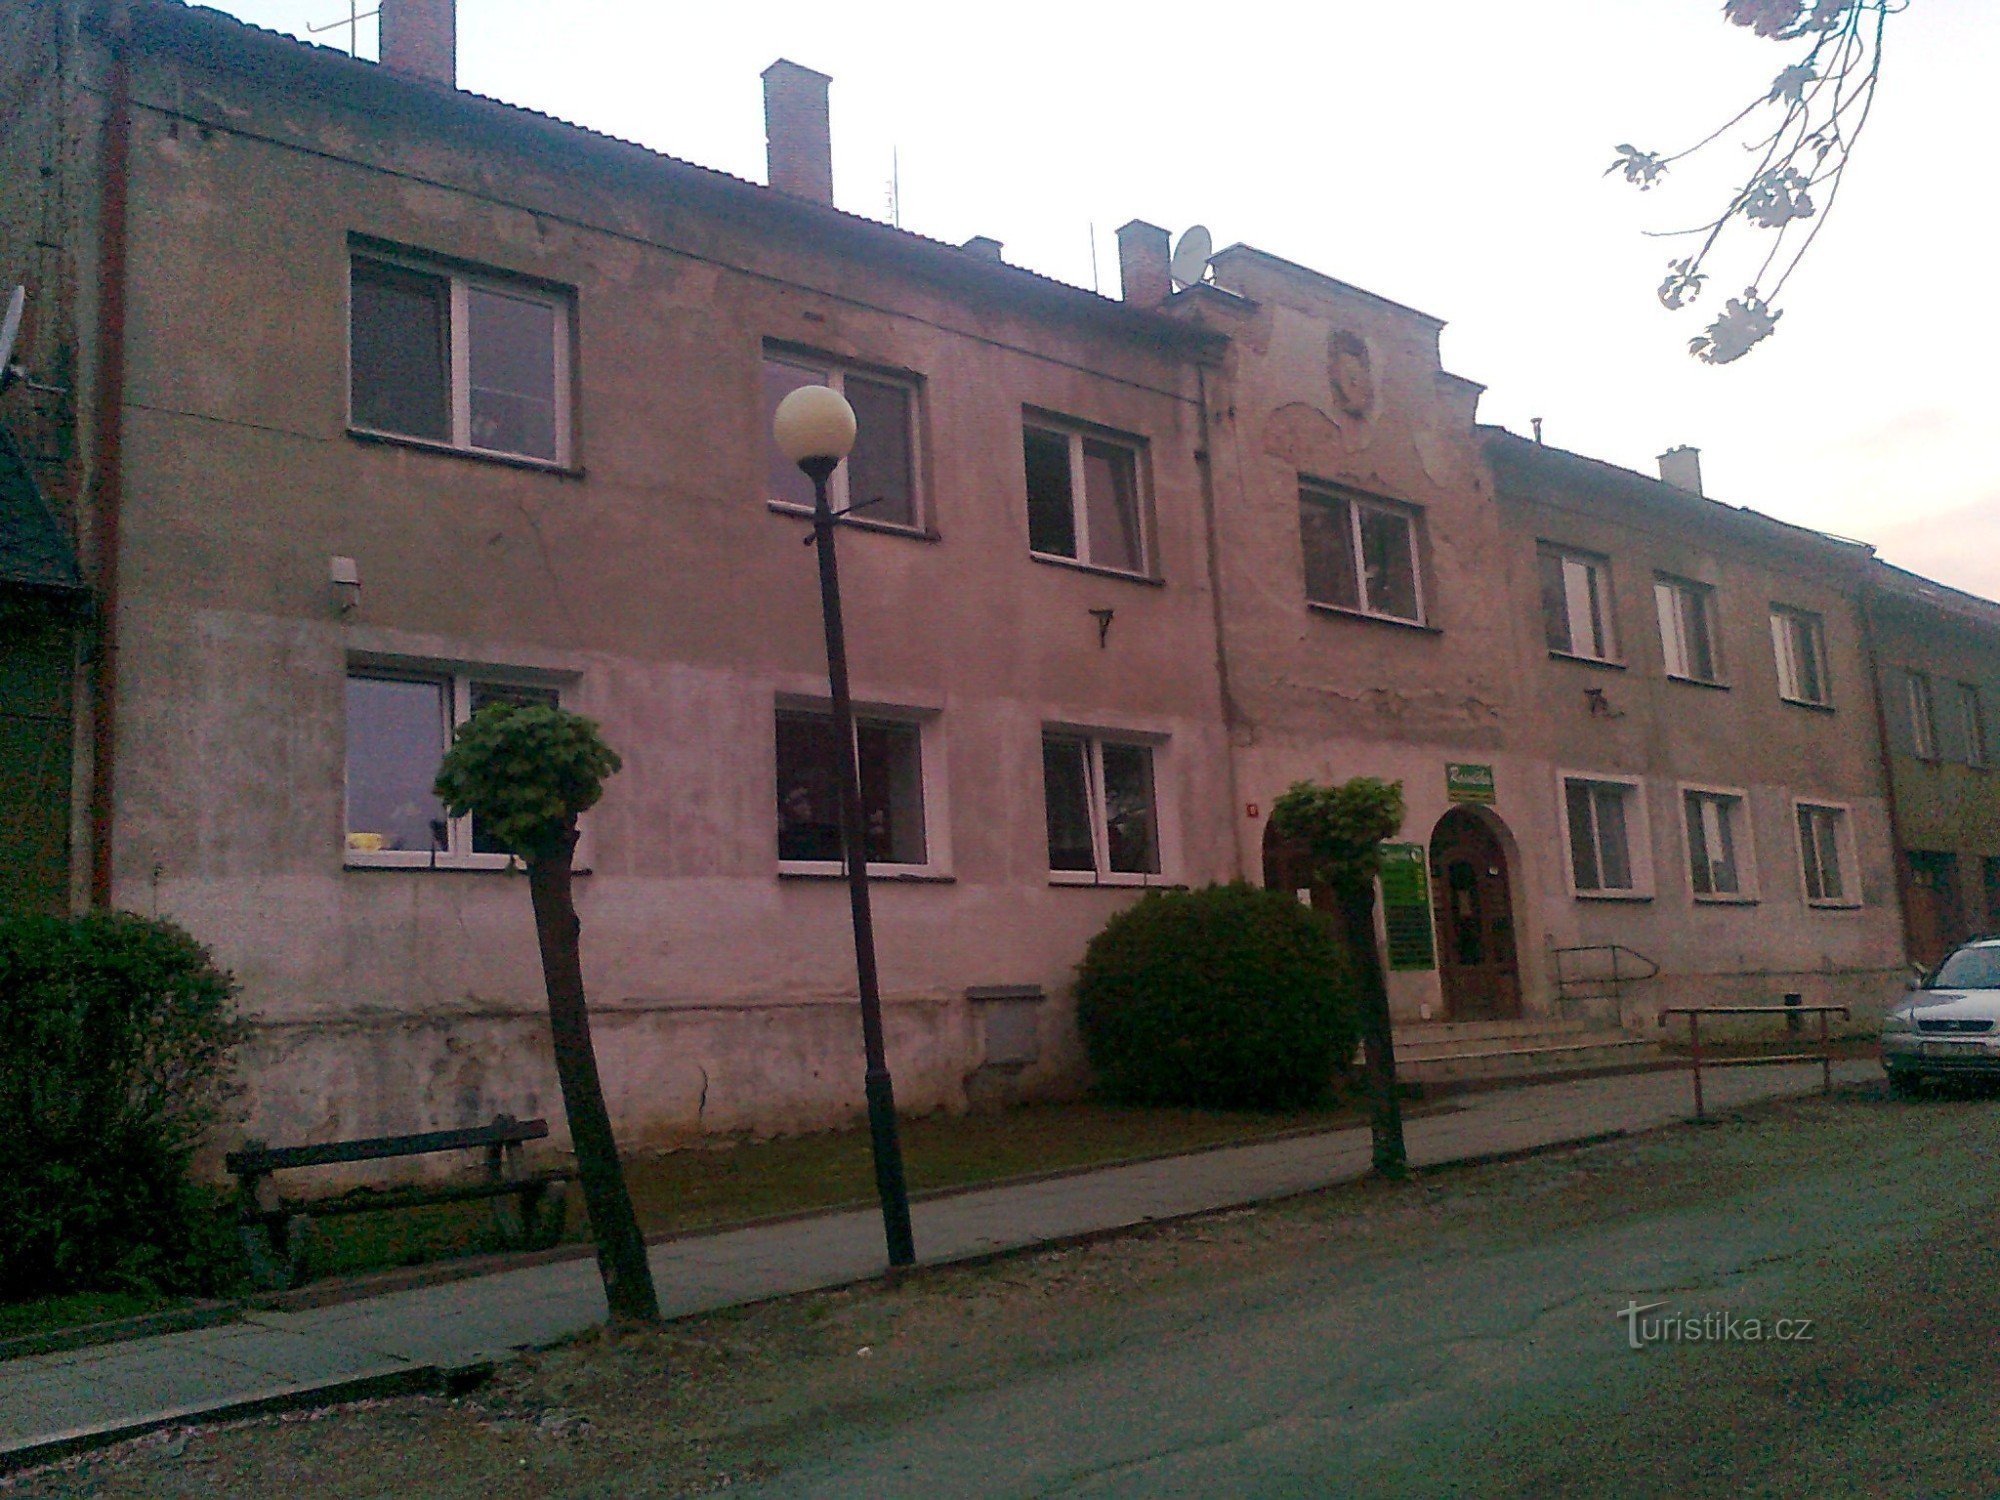 MODRÁ HVĖZDA と呼ばれる Náměstí Míru No. 51 の家